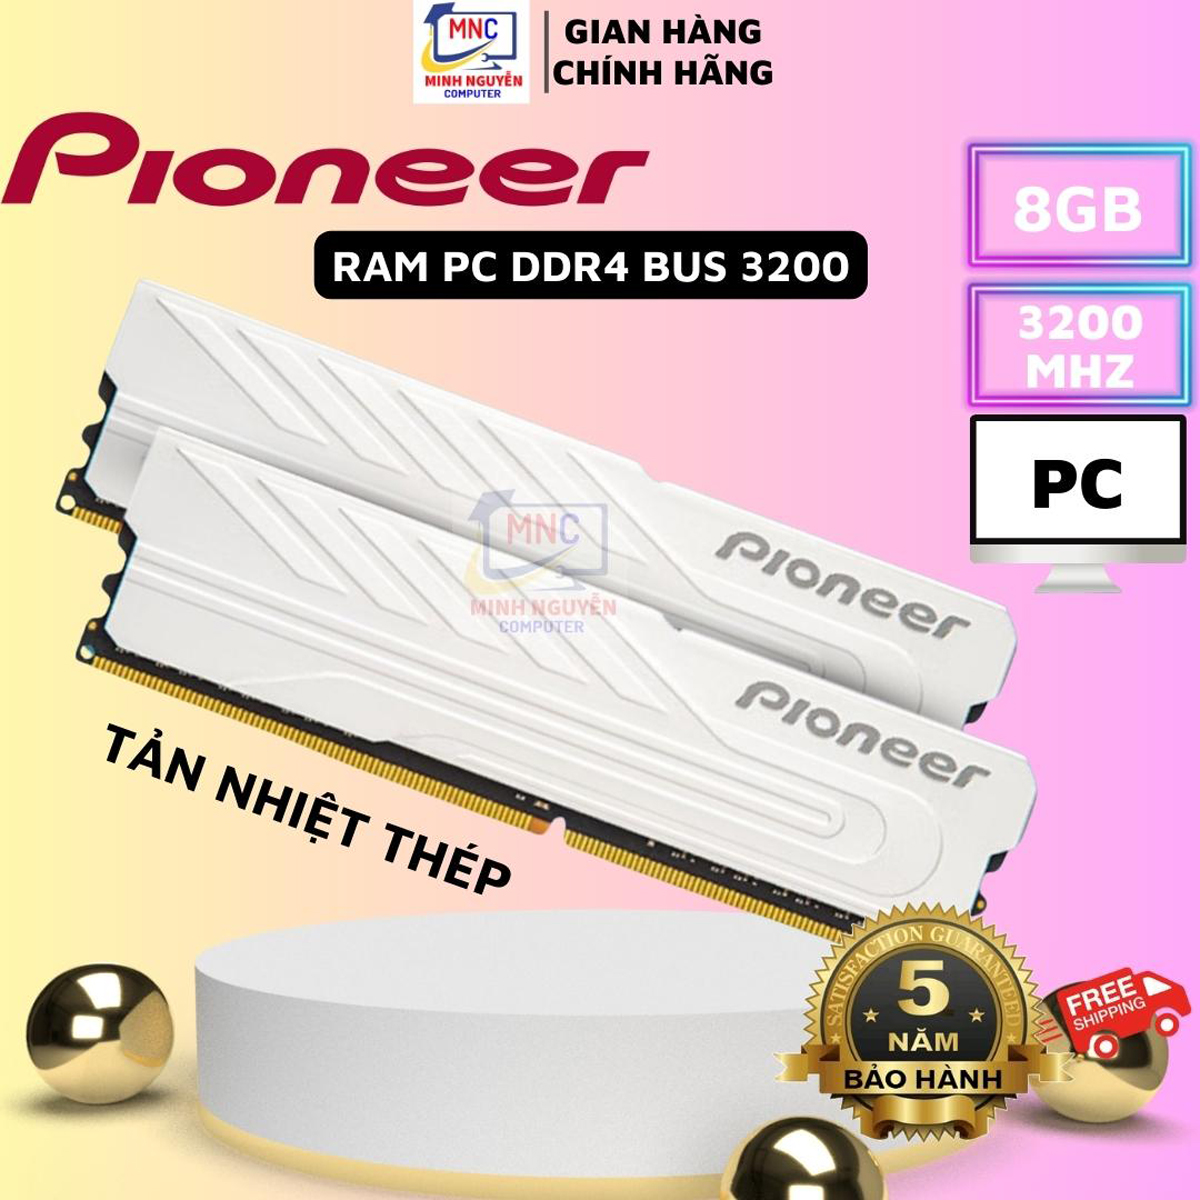 Ram PC 8GB,16GB DDR4 Bus 3200MHz Pioneer, Tản nhiệt thép, mới 100%